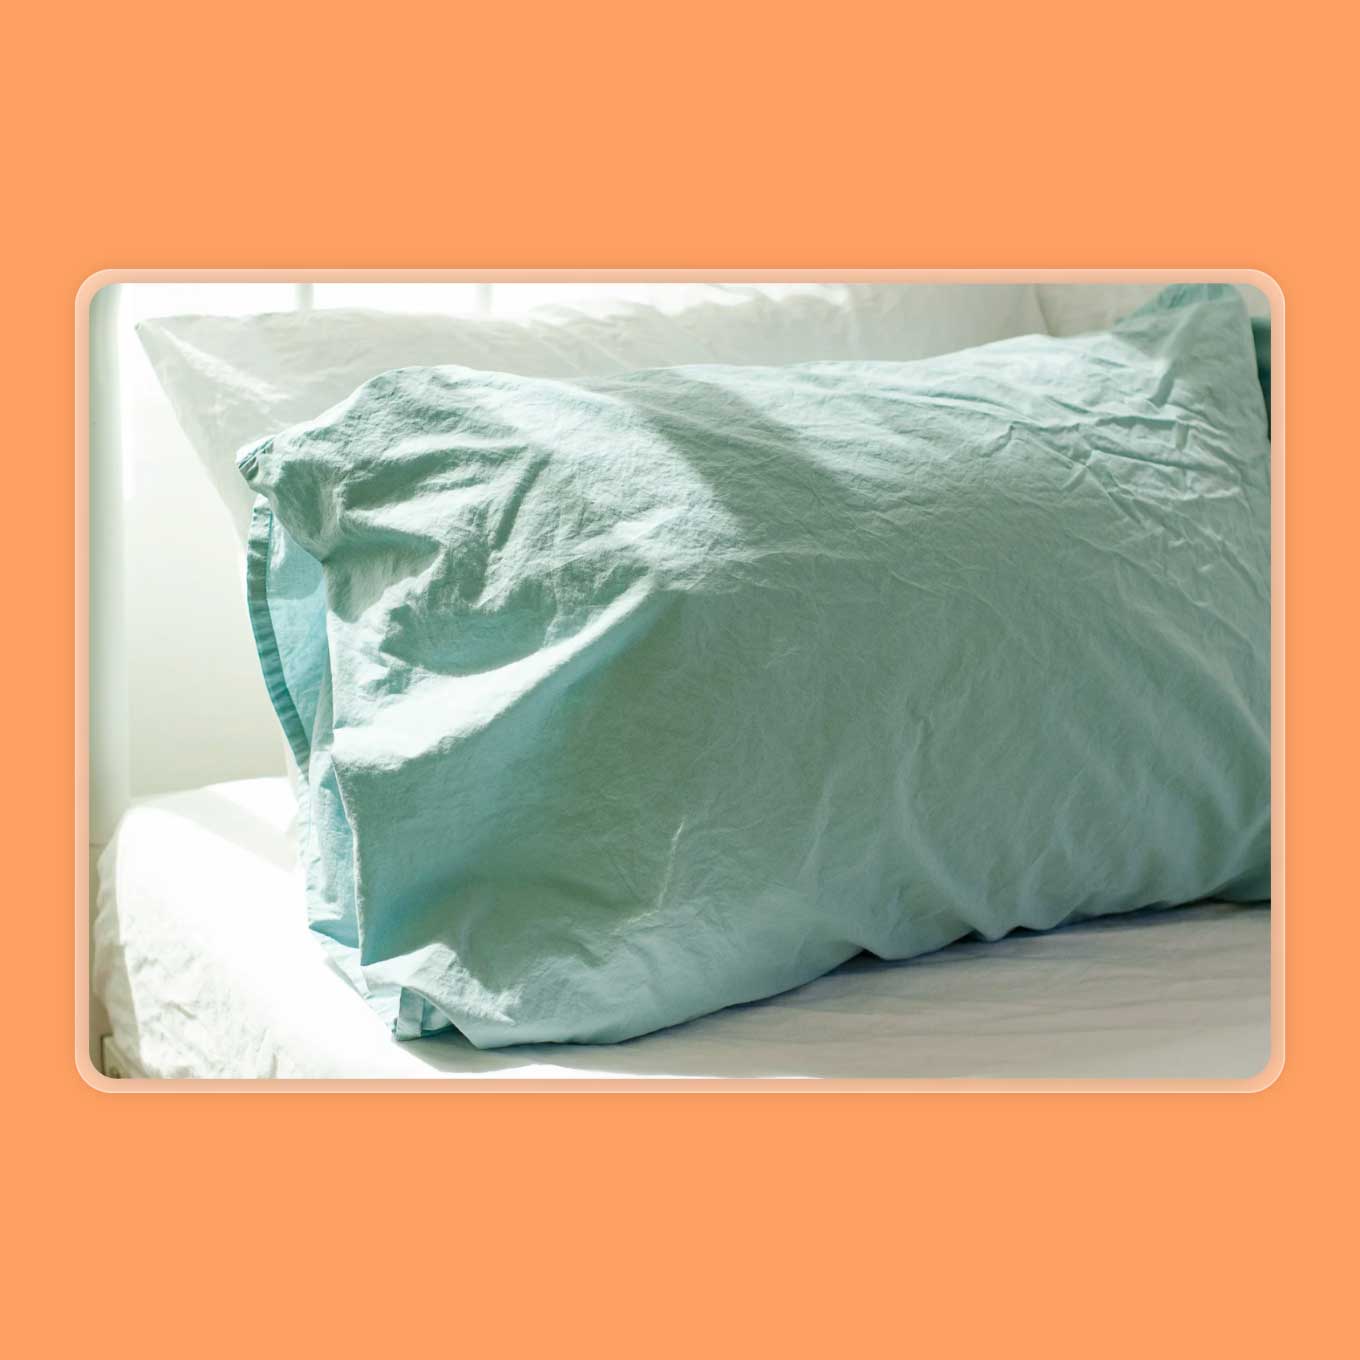 A percale pillow case